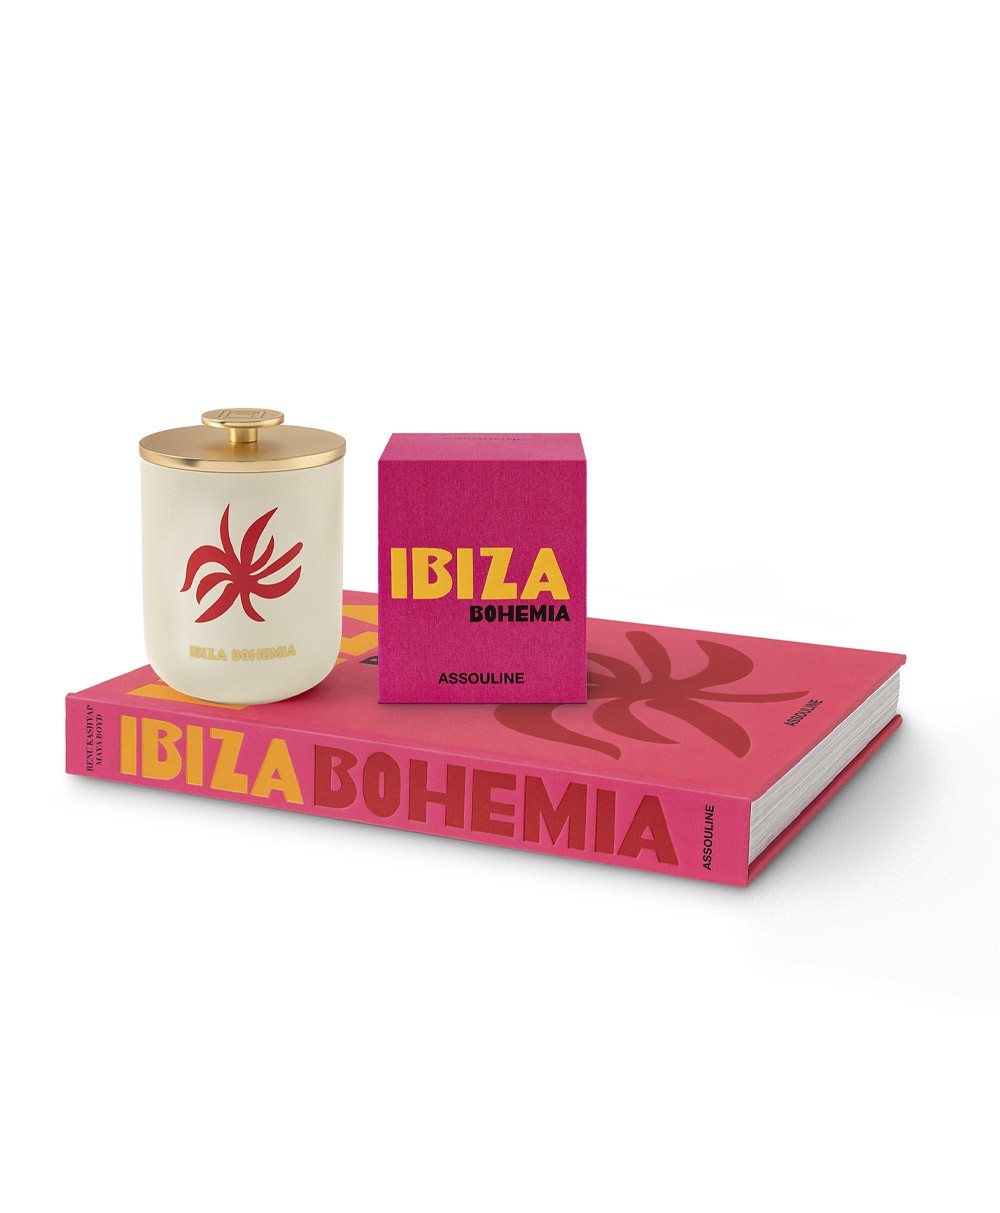 Dieses Bild zeigt das Produktbild der Travel from Home Candle Ibiza Bohemia von Assouline im RAUM concept store